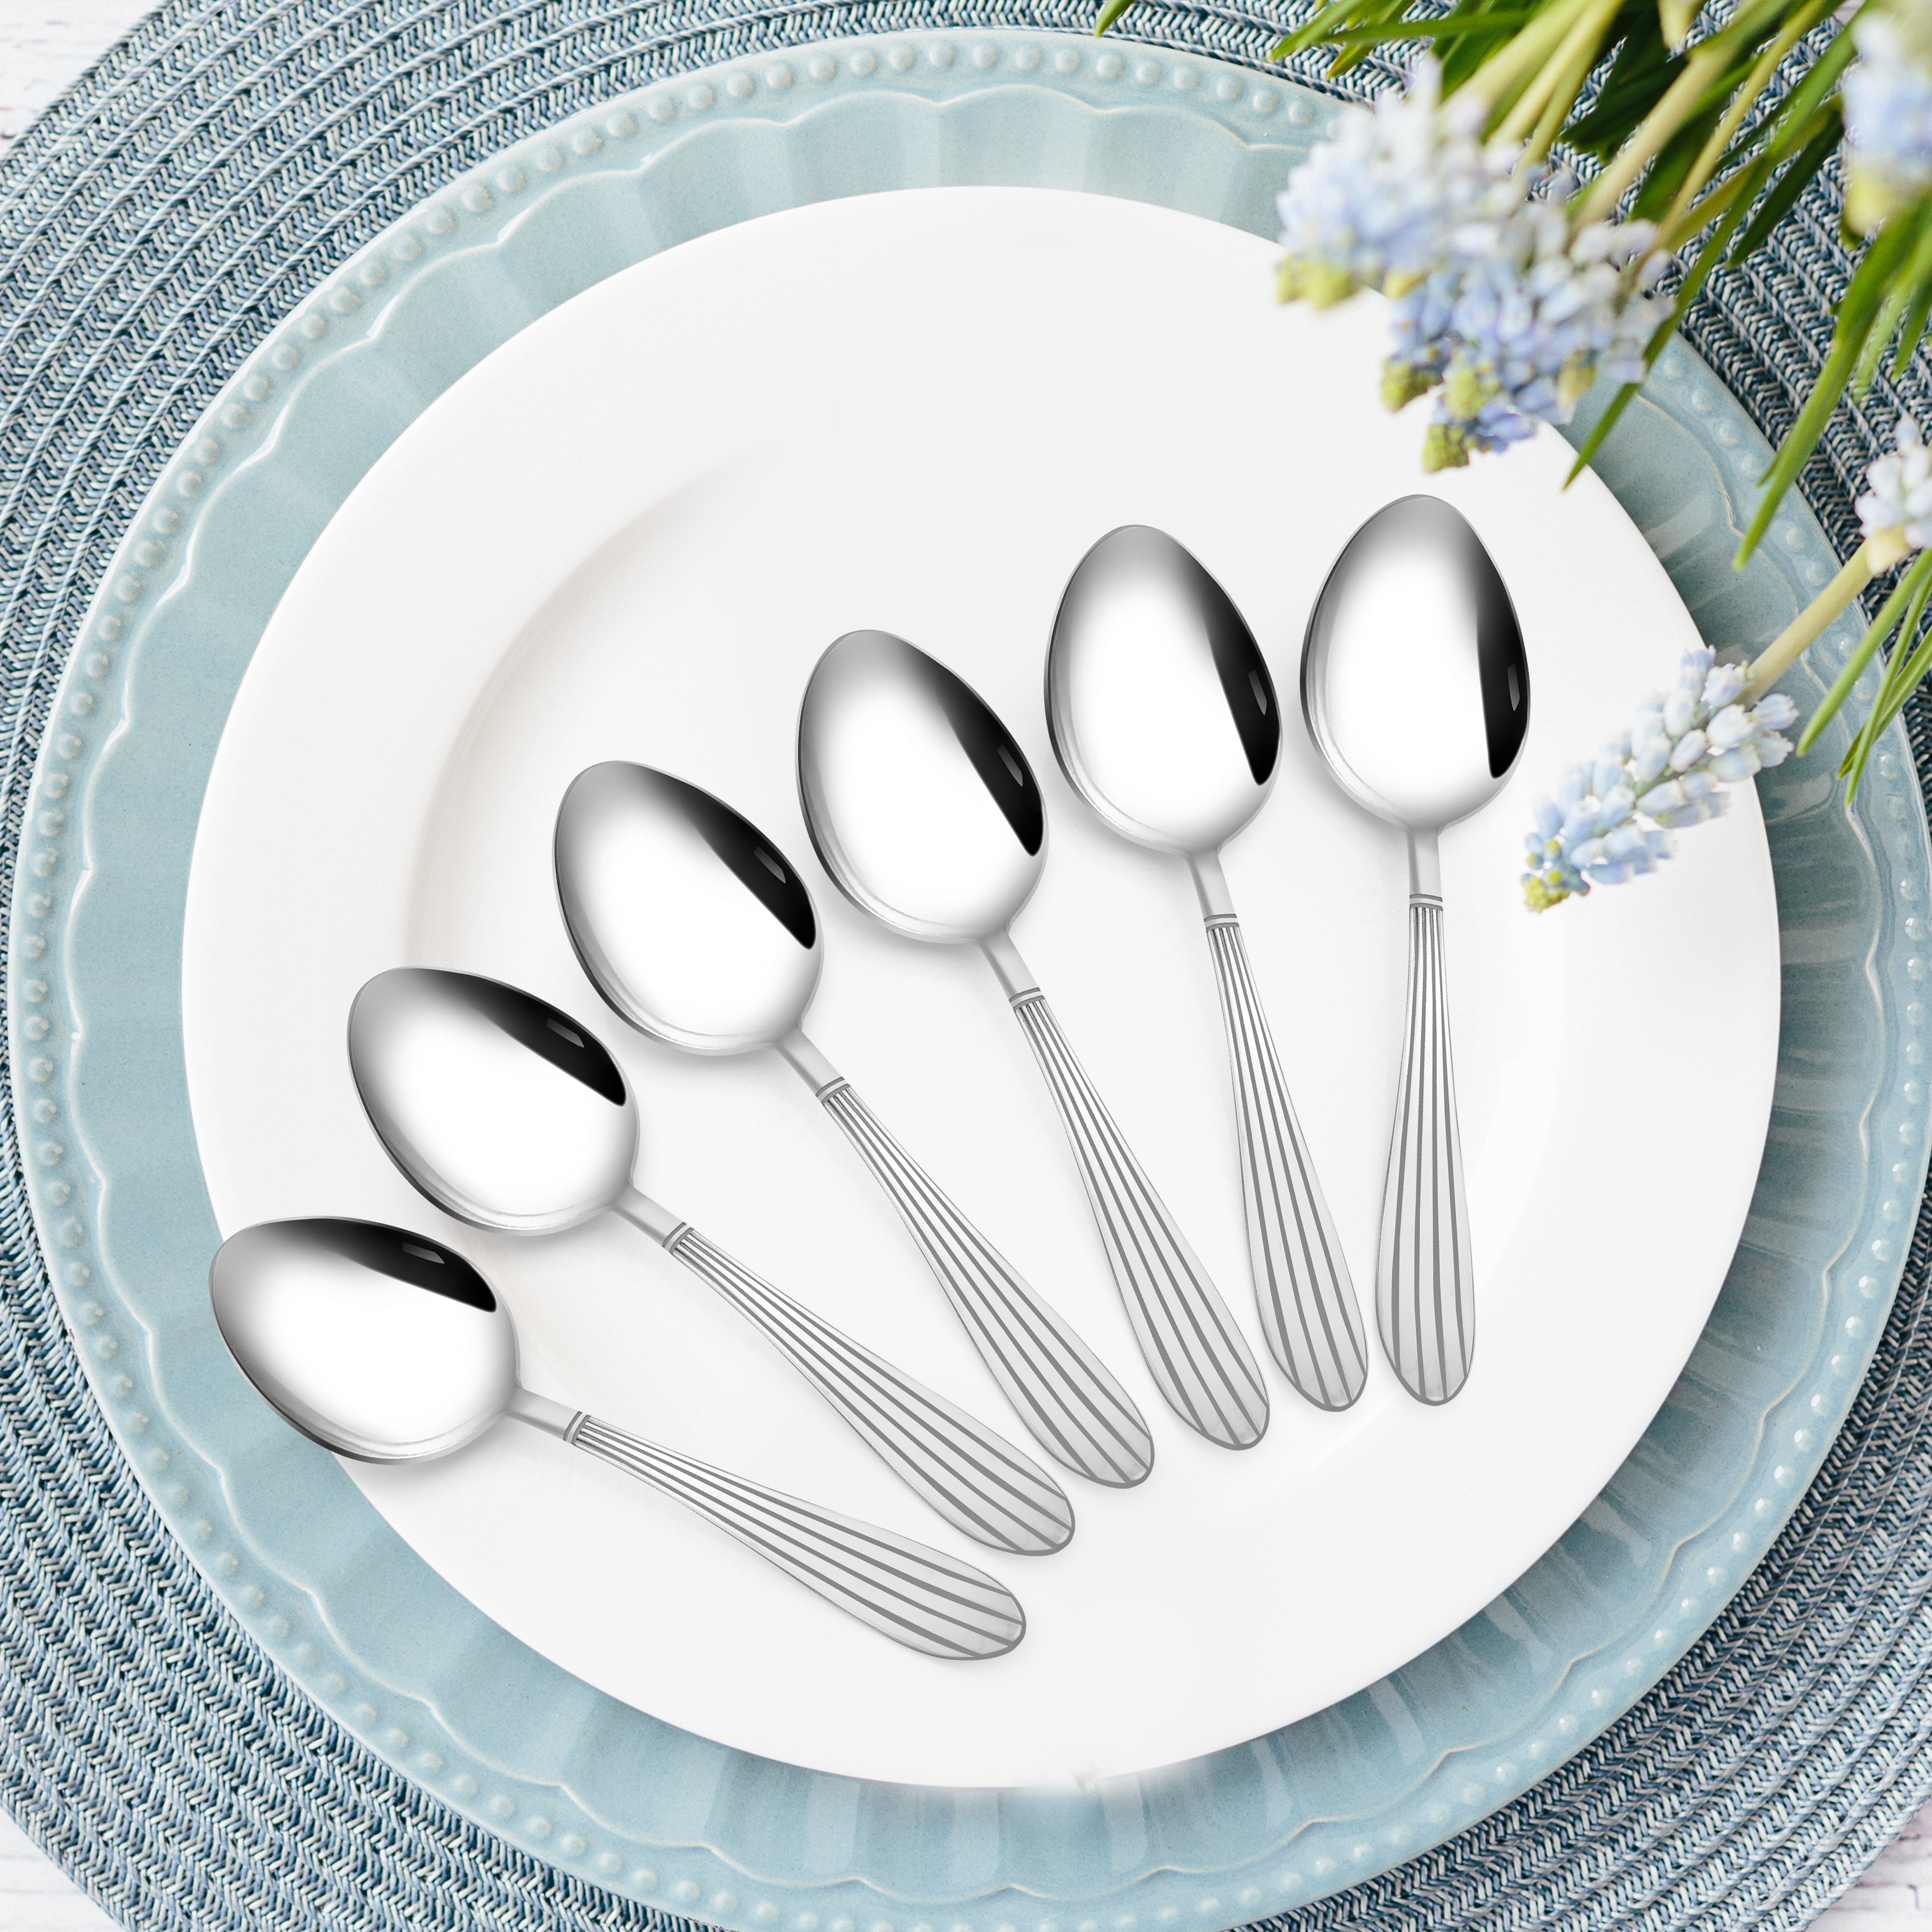 Arias Sysco Dinner Spoon Set of 6 (Silver)